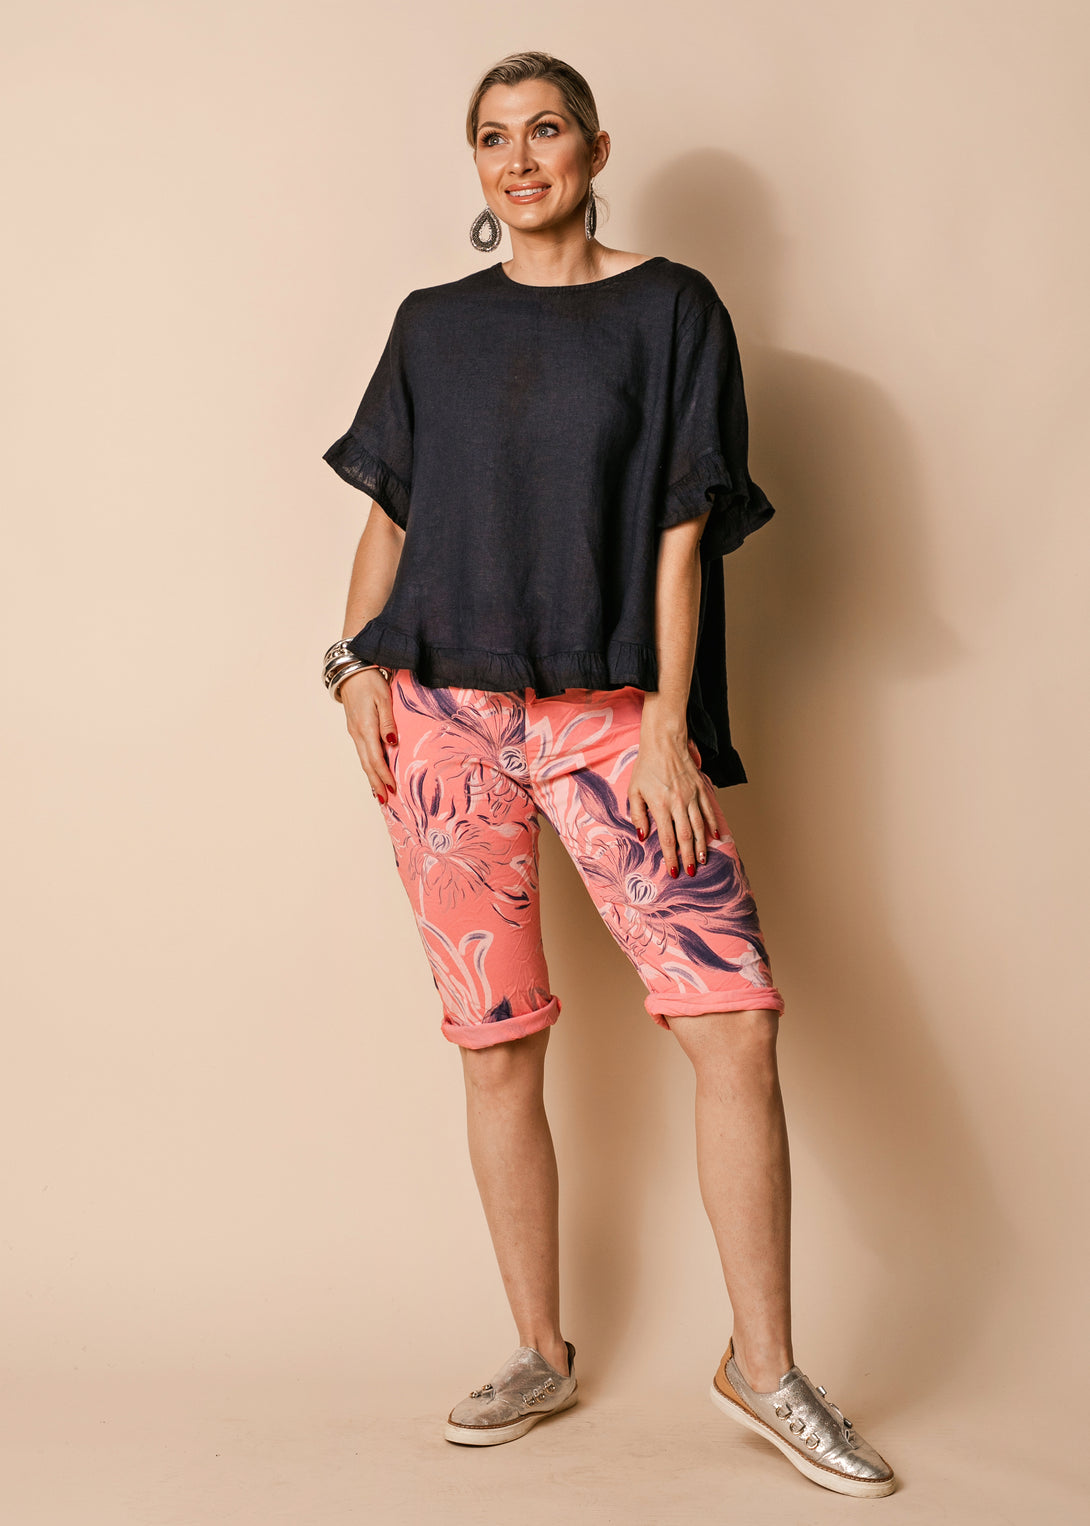 Narine Shorts in Coral Crush - Imagine Fashion